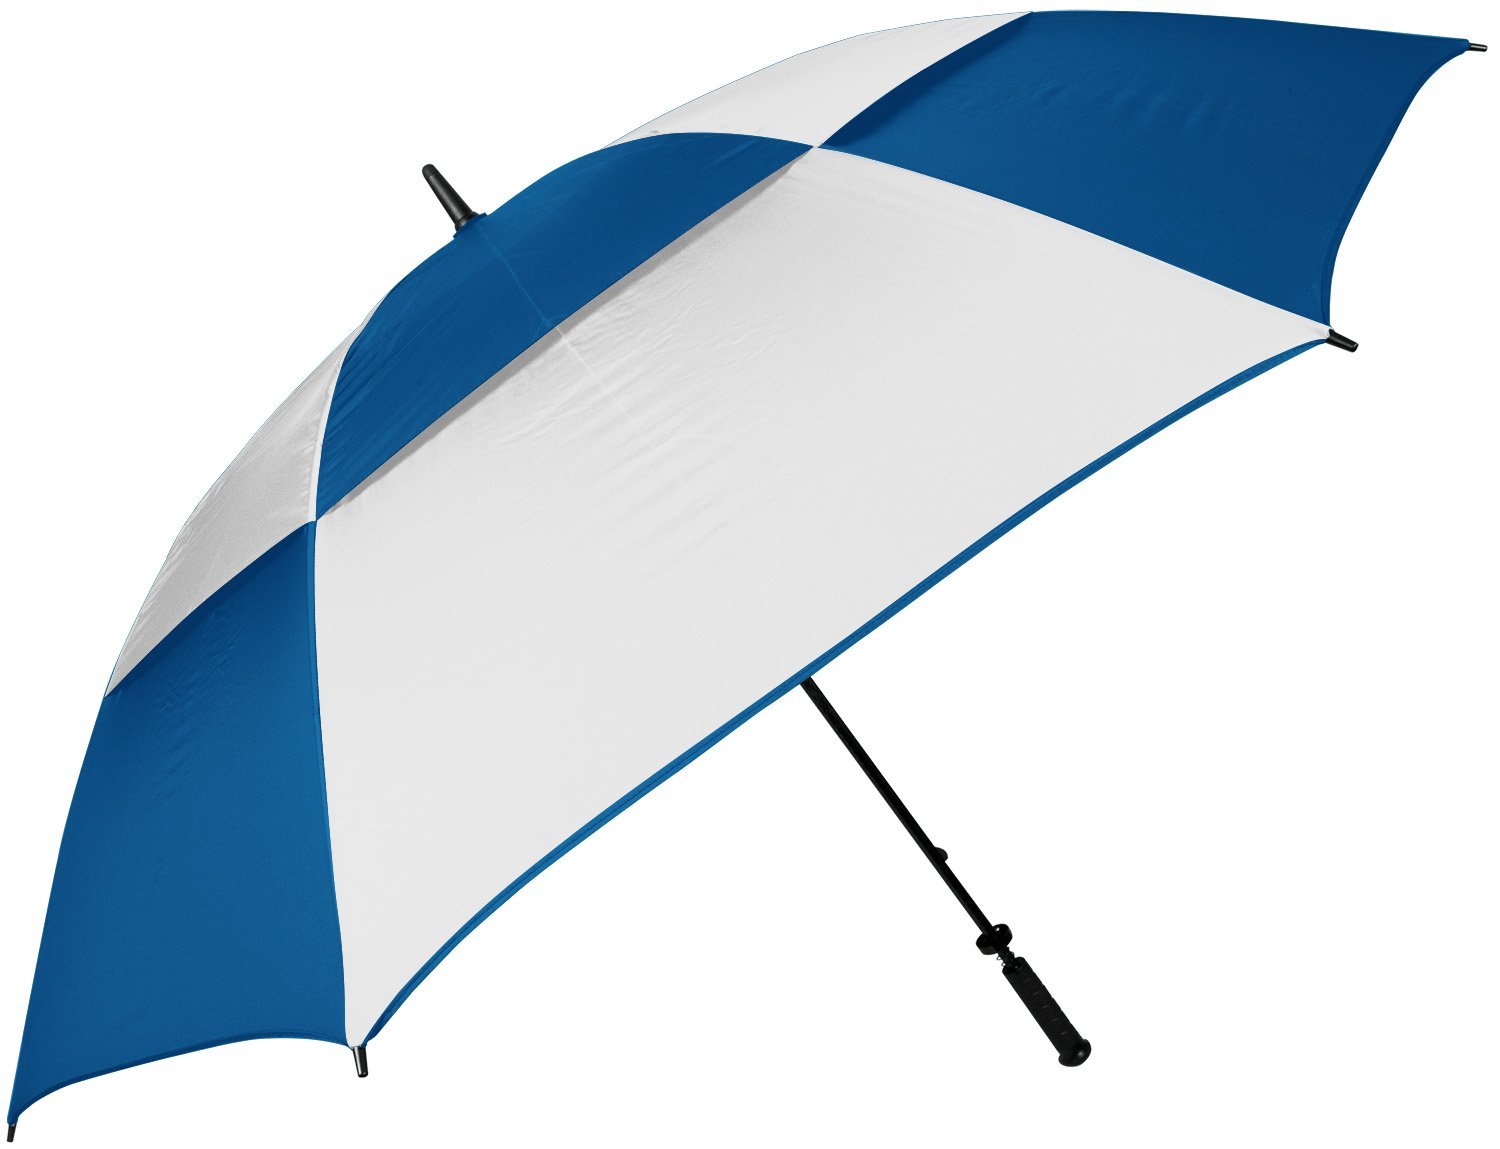 68" Guardian Umbrella